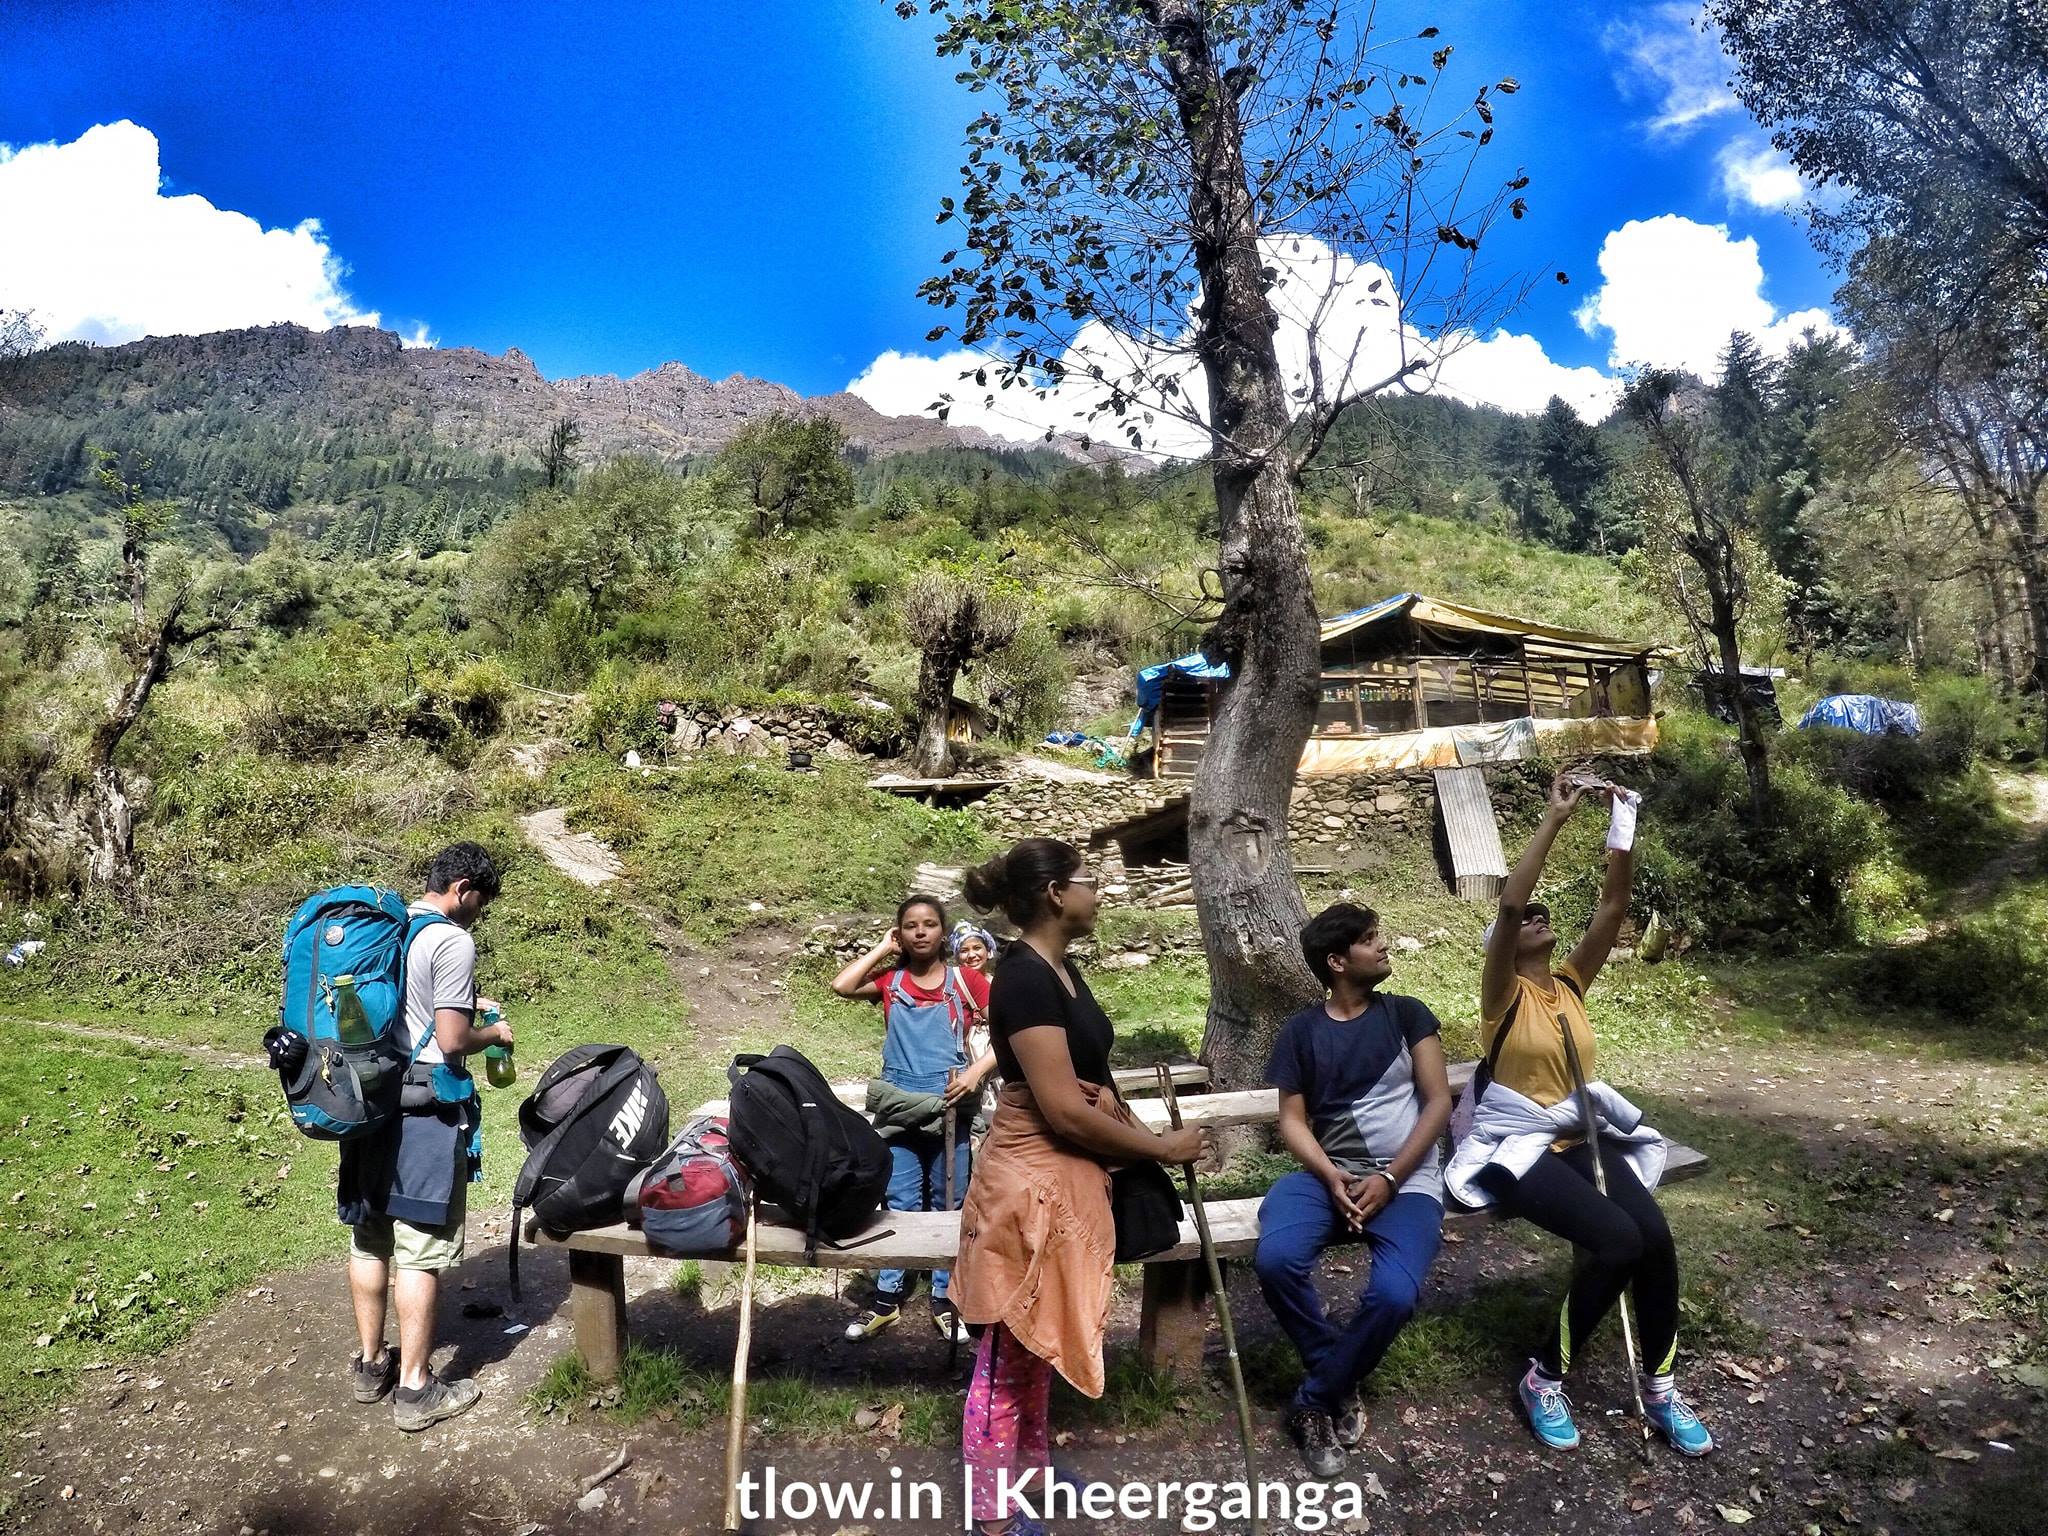 Along the hike to kheerganga